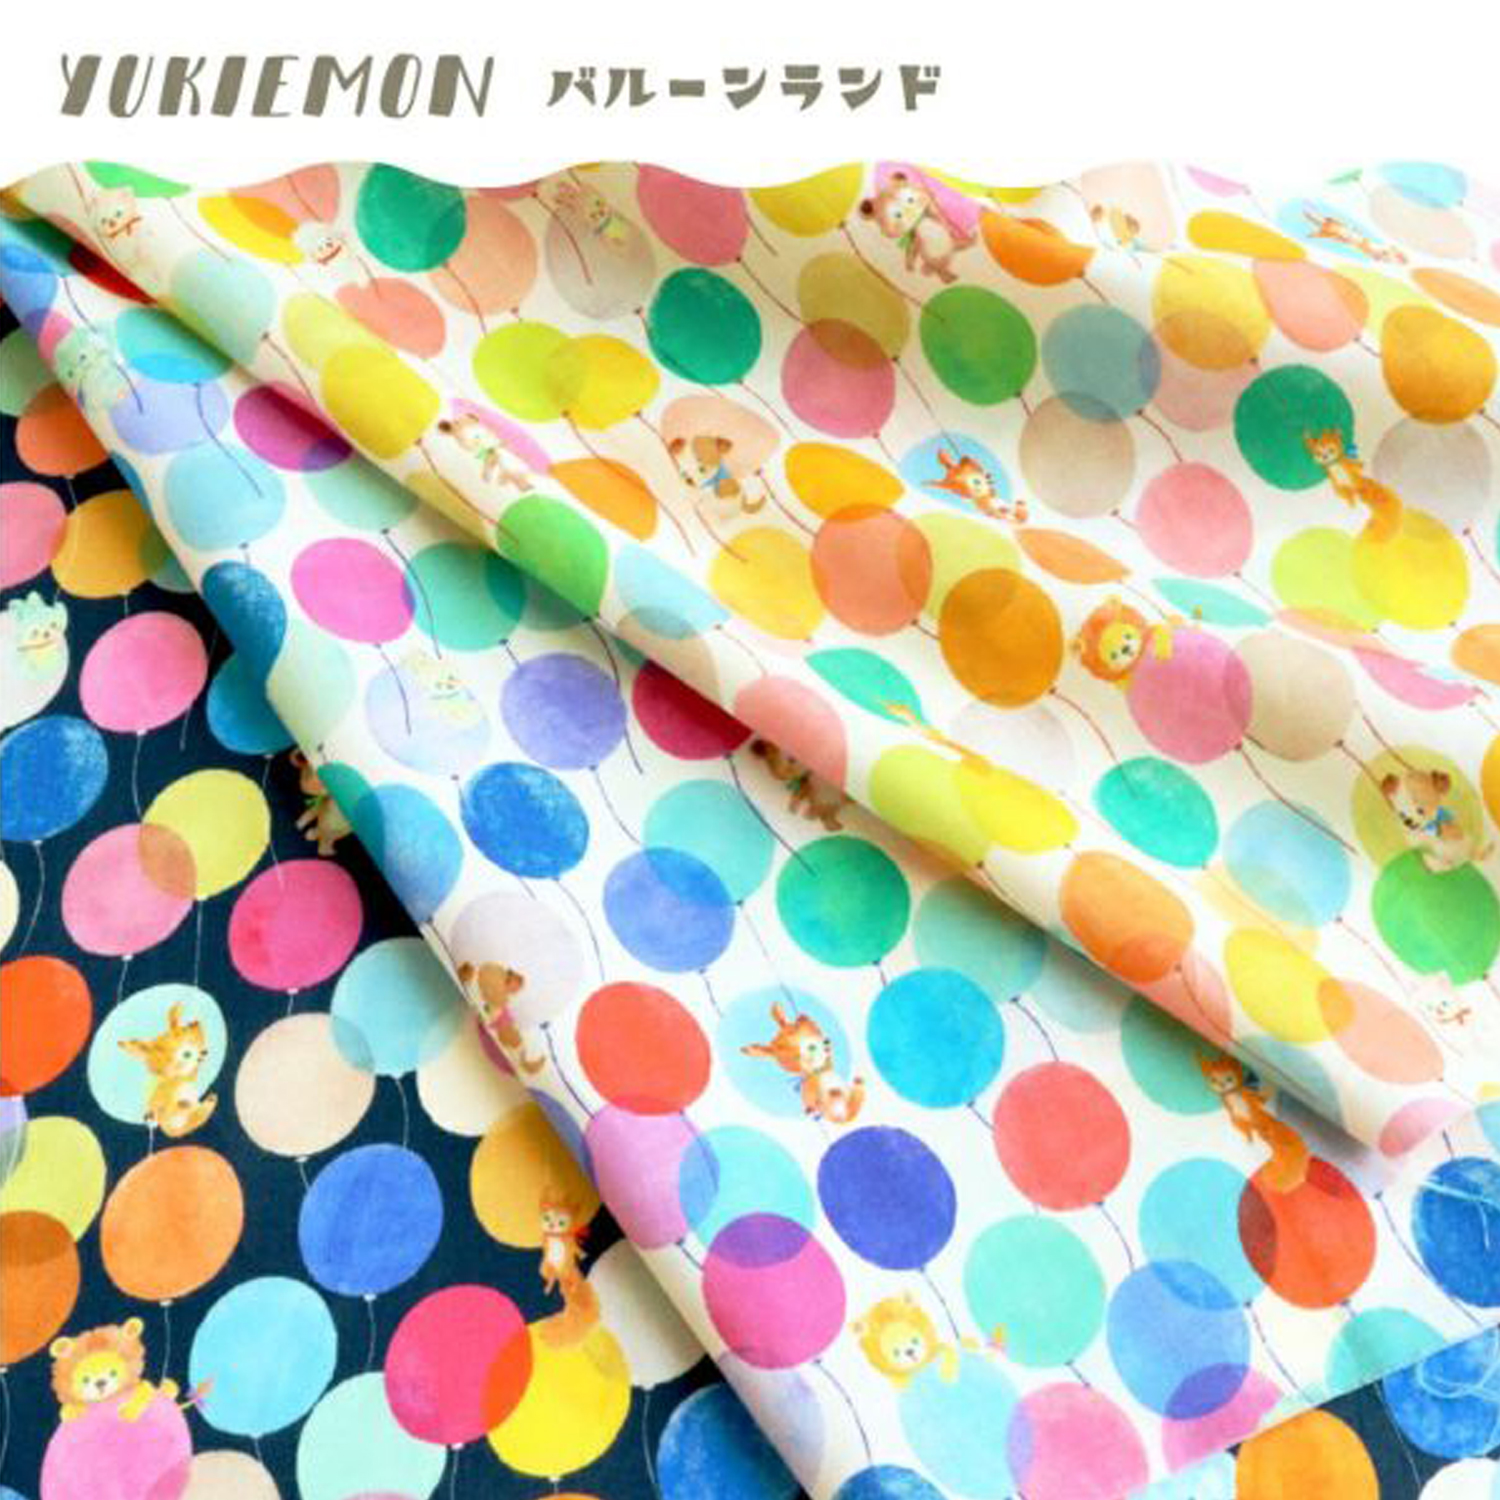  DP4400-11 「ユキエモン yukiemon バルーンランド 22fabric」